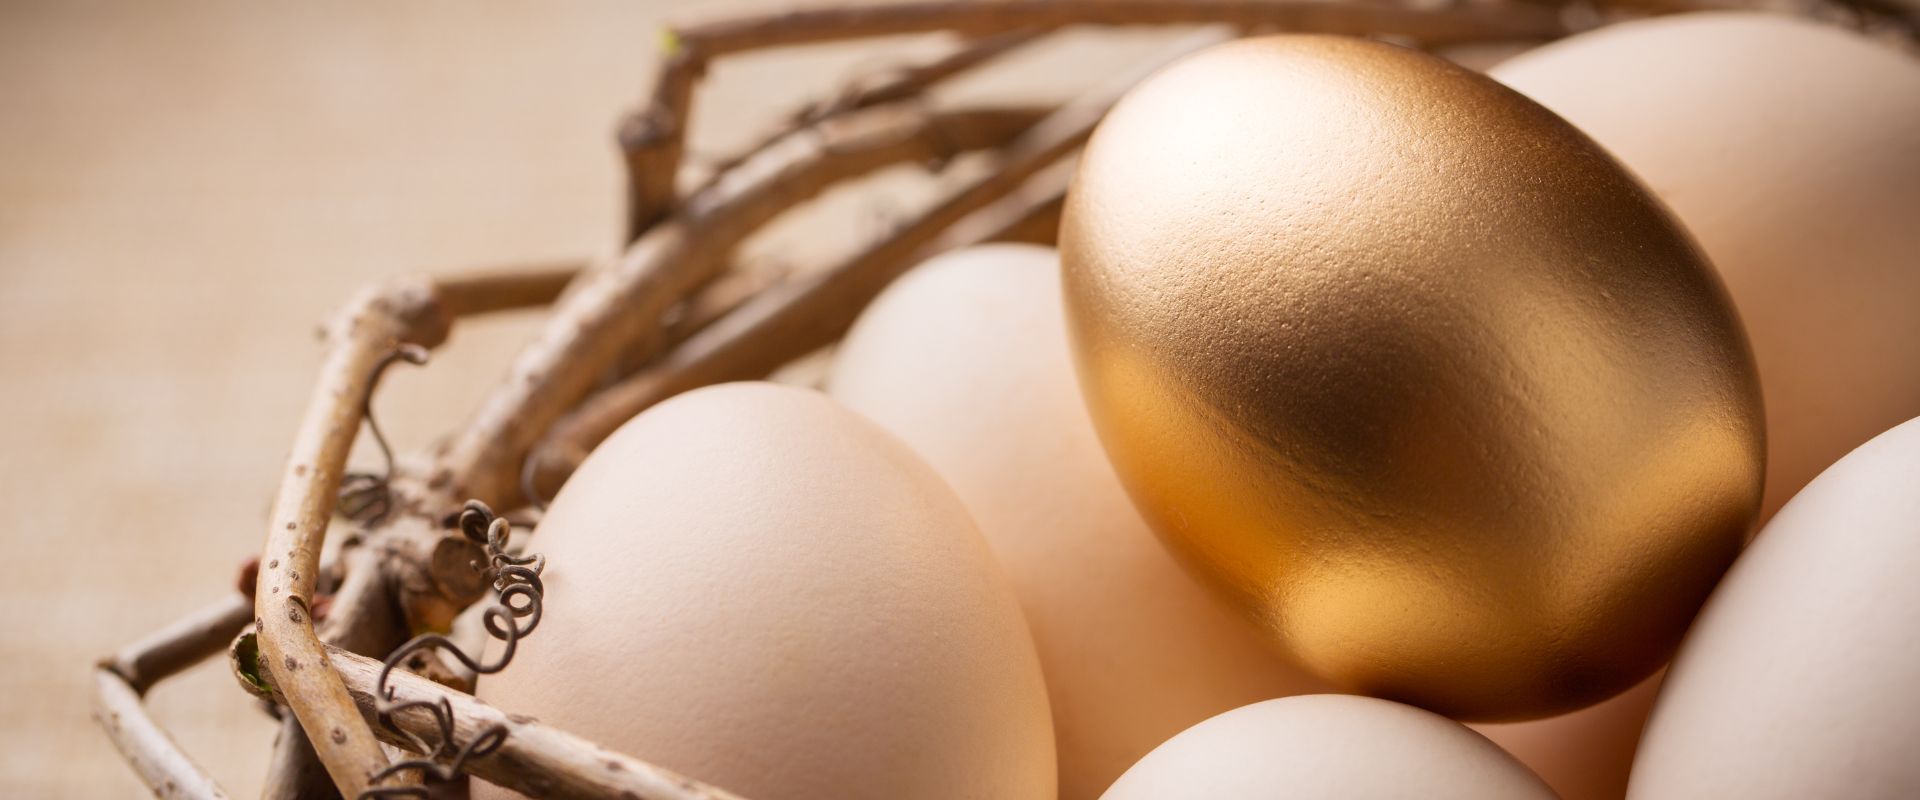 golden egg with white eggs inside the nest